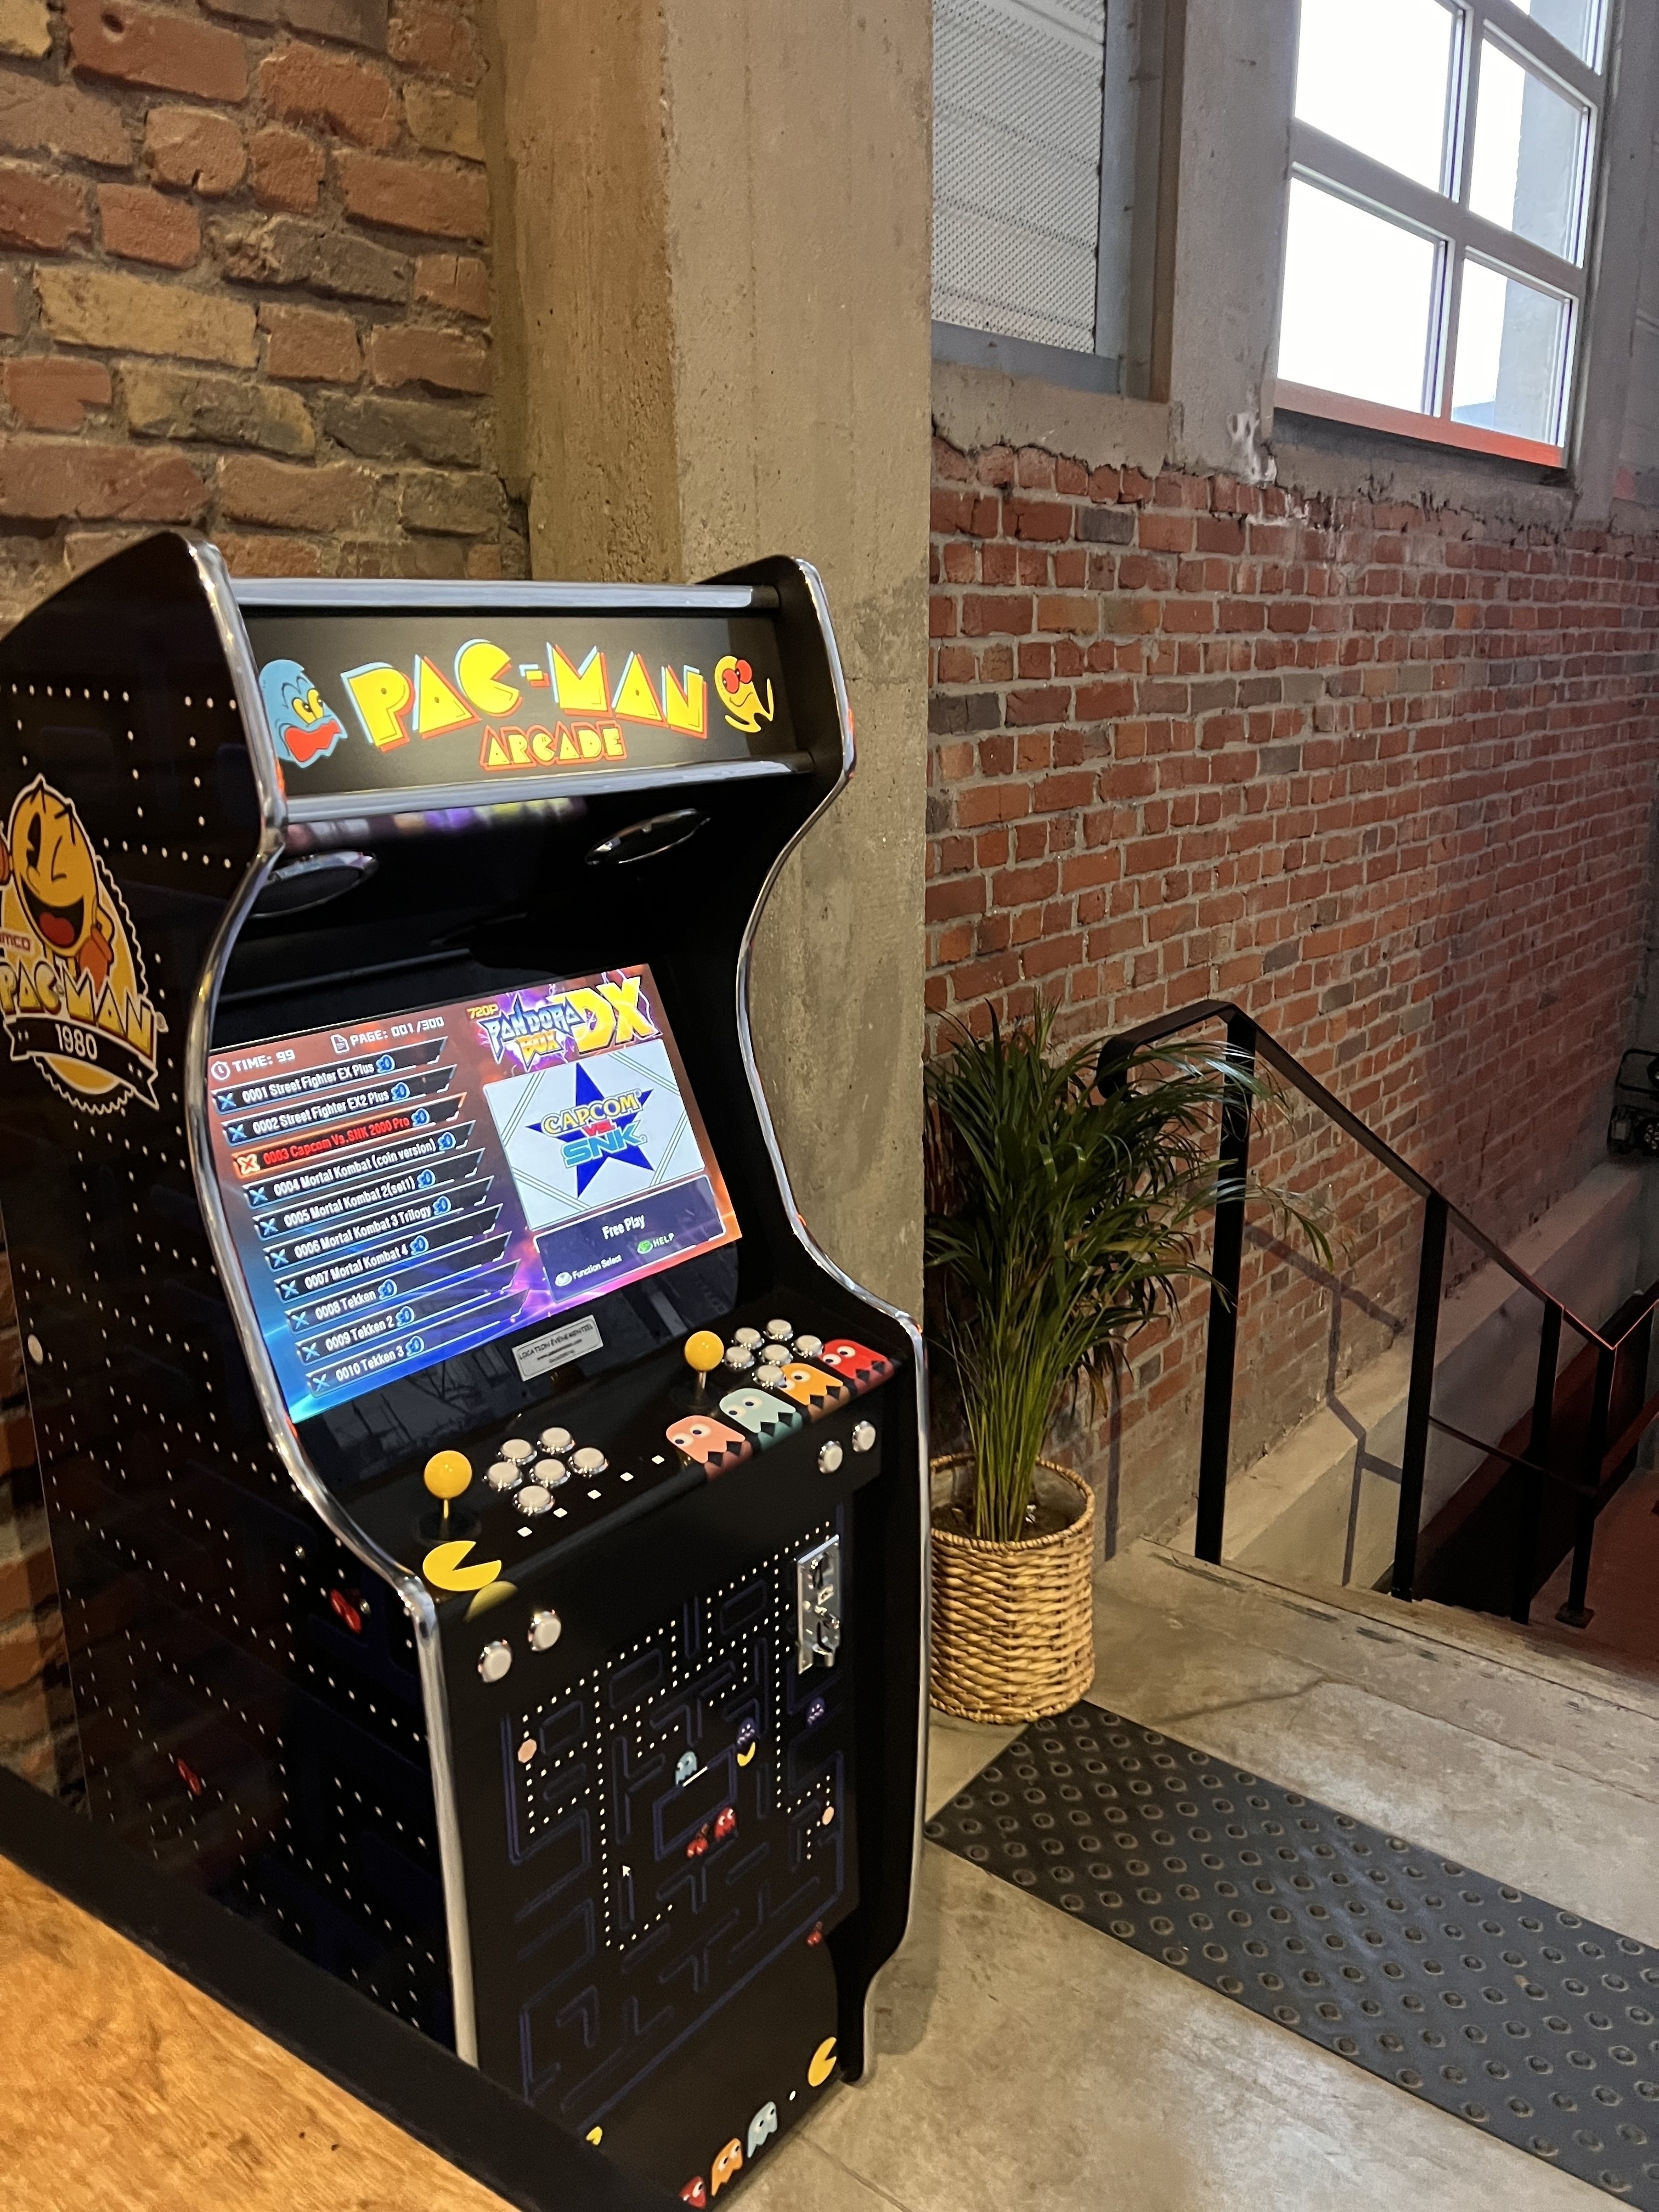 Borne arcade PaC Man 2022 avec 5000 jeux